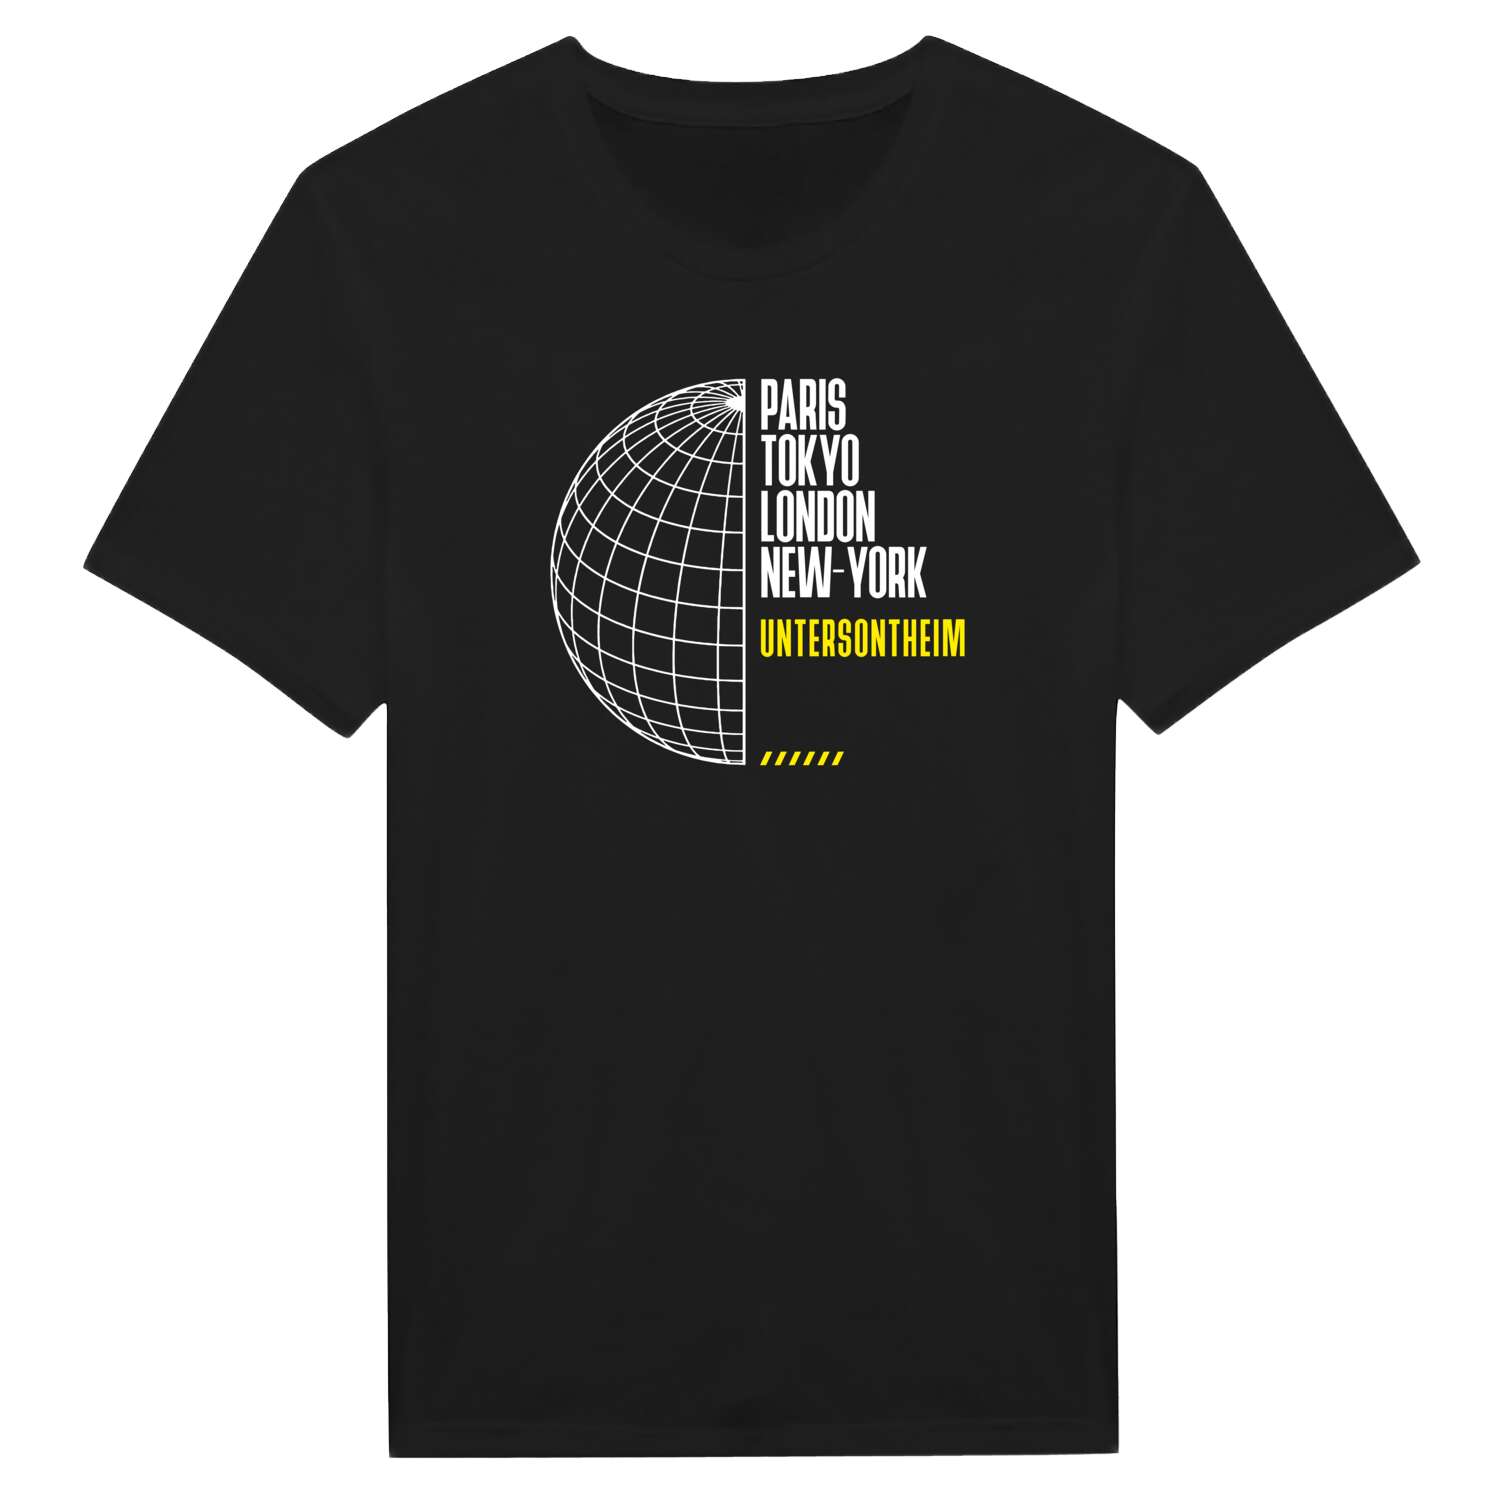 Untersontheim T-Shirt »Paris Tokyo London«